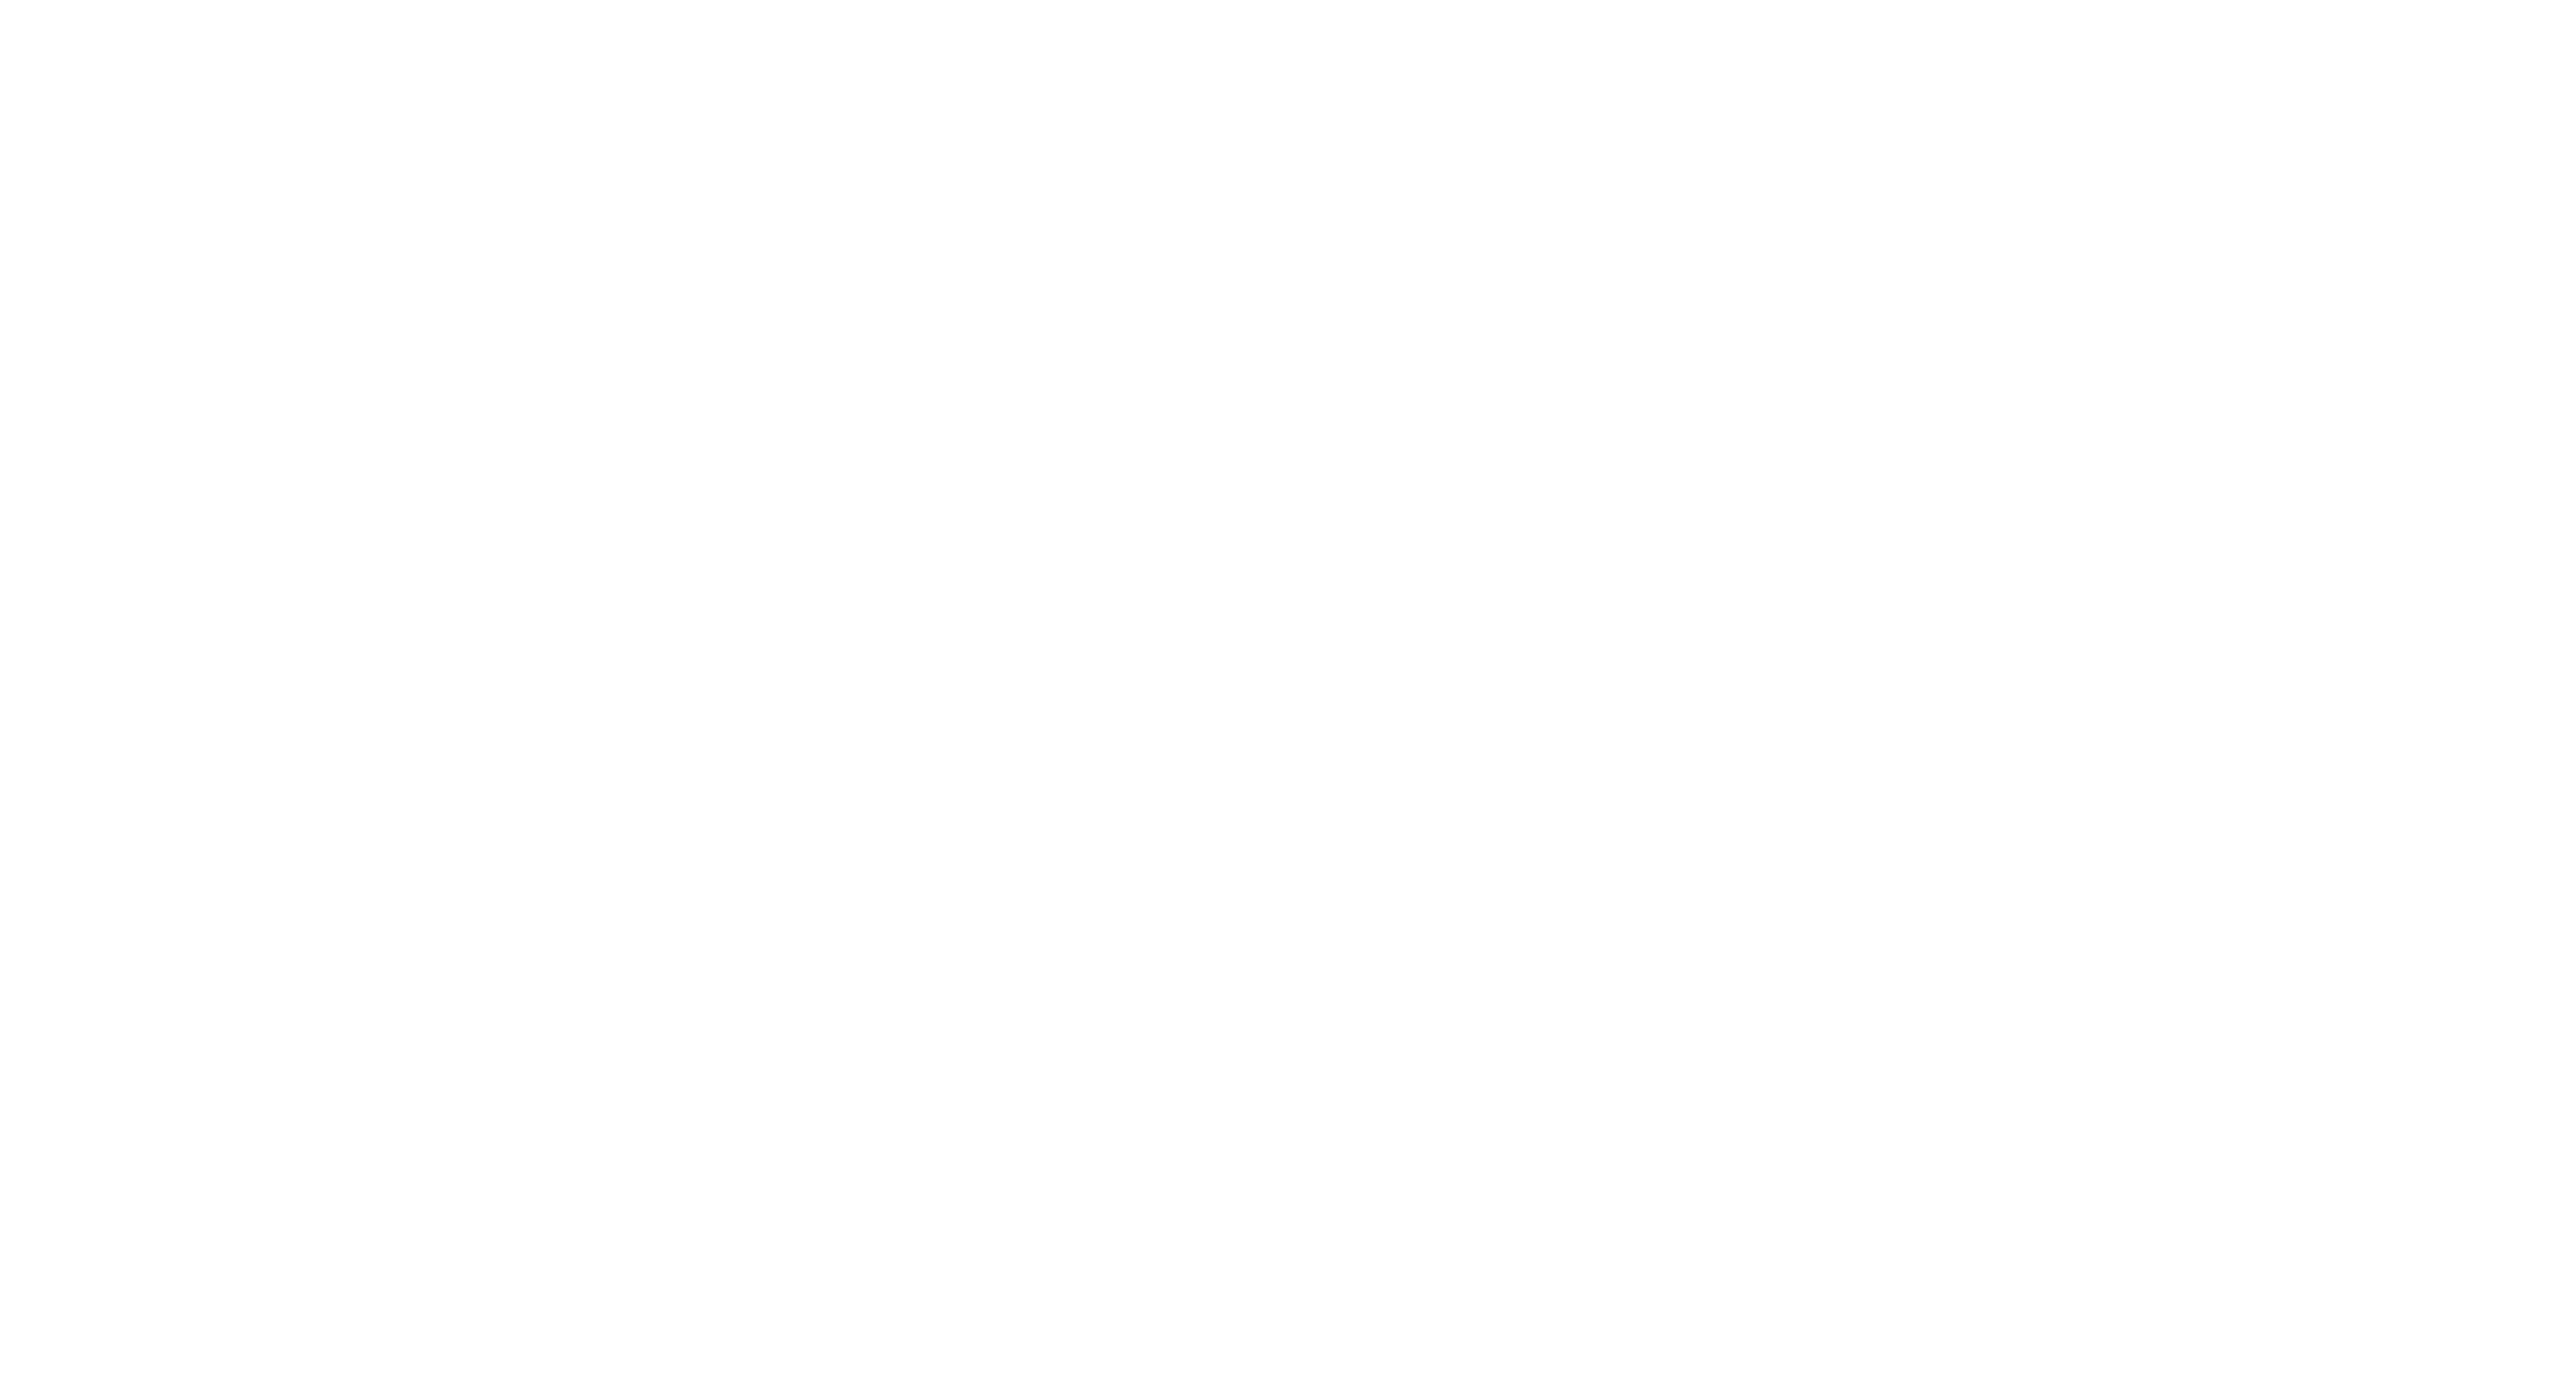 Croptech Show Logo